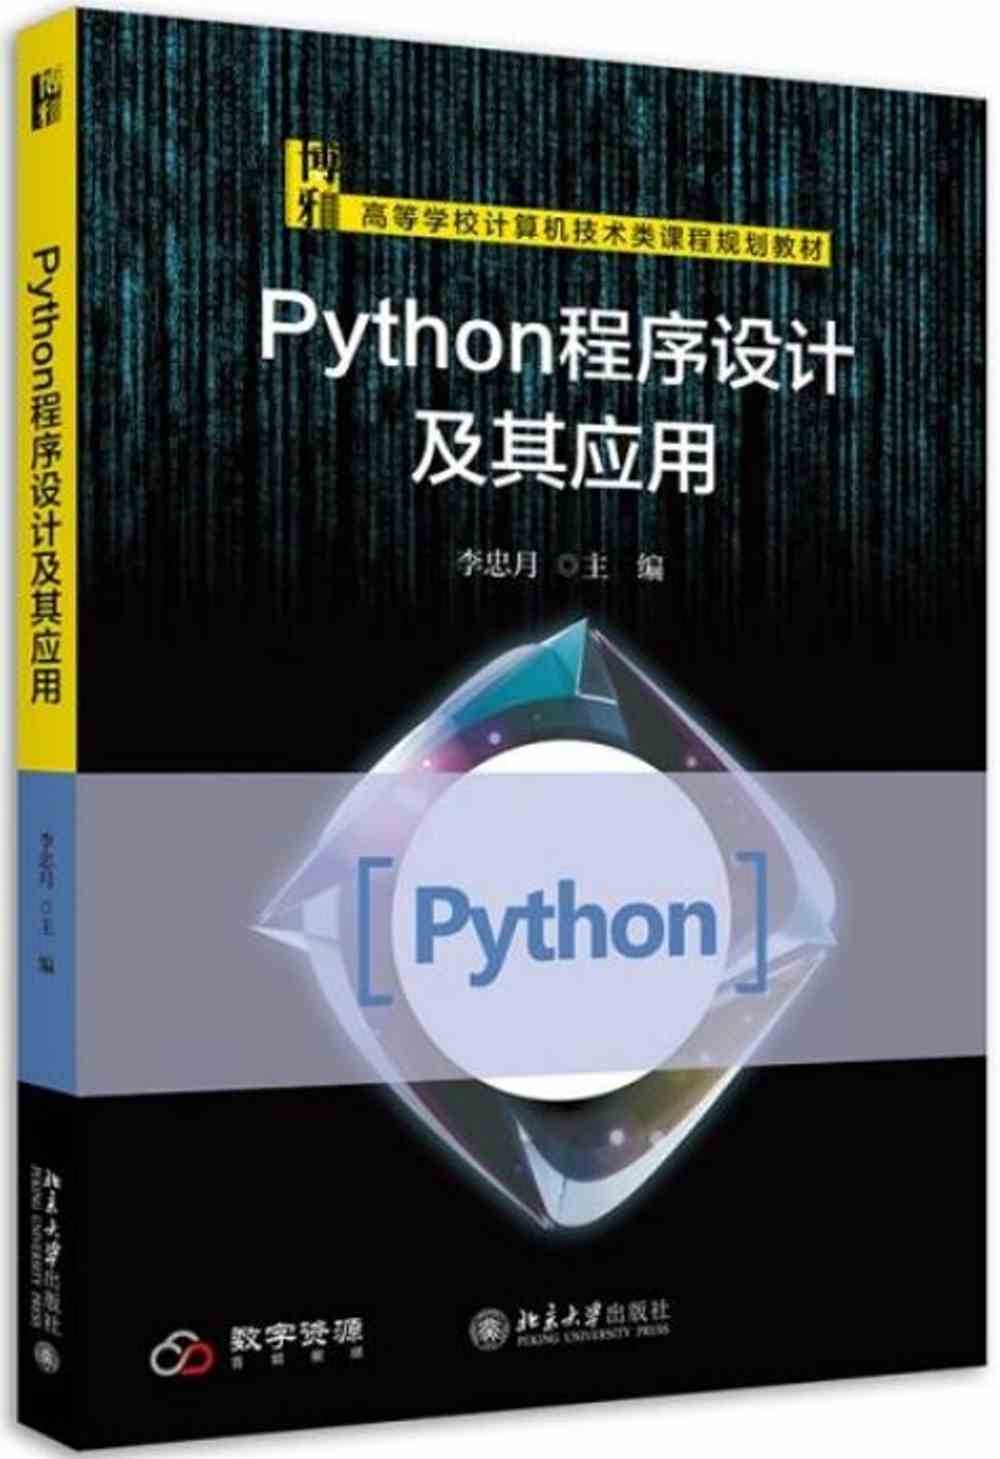 Python程序設計及其應用